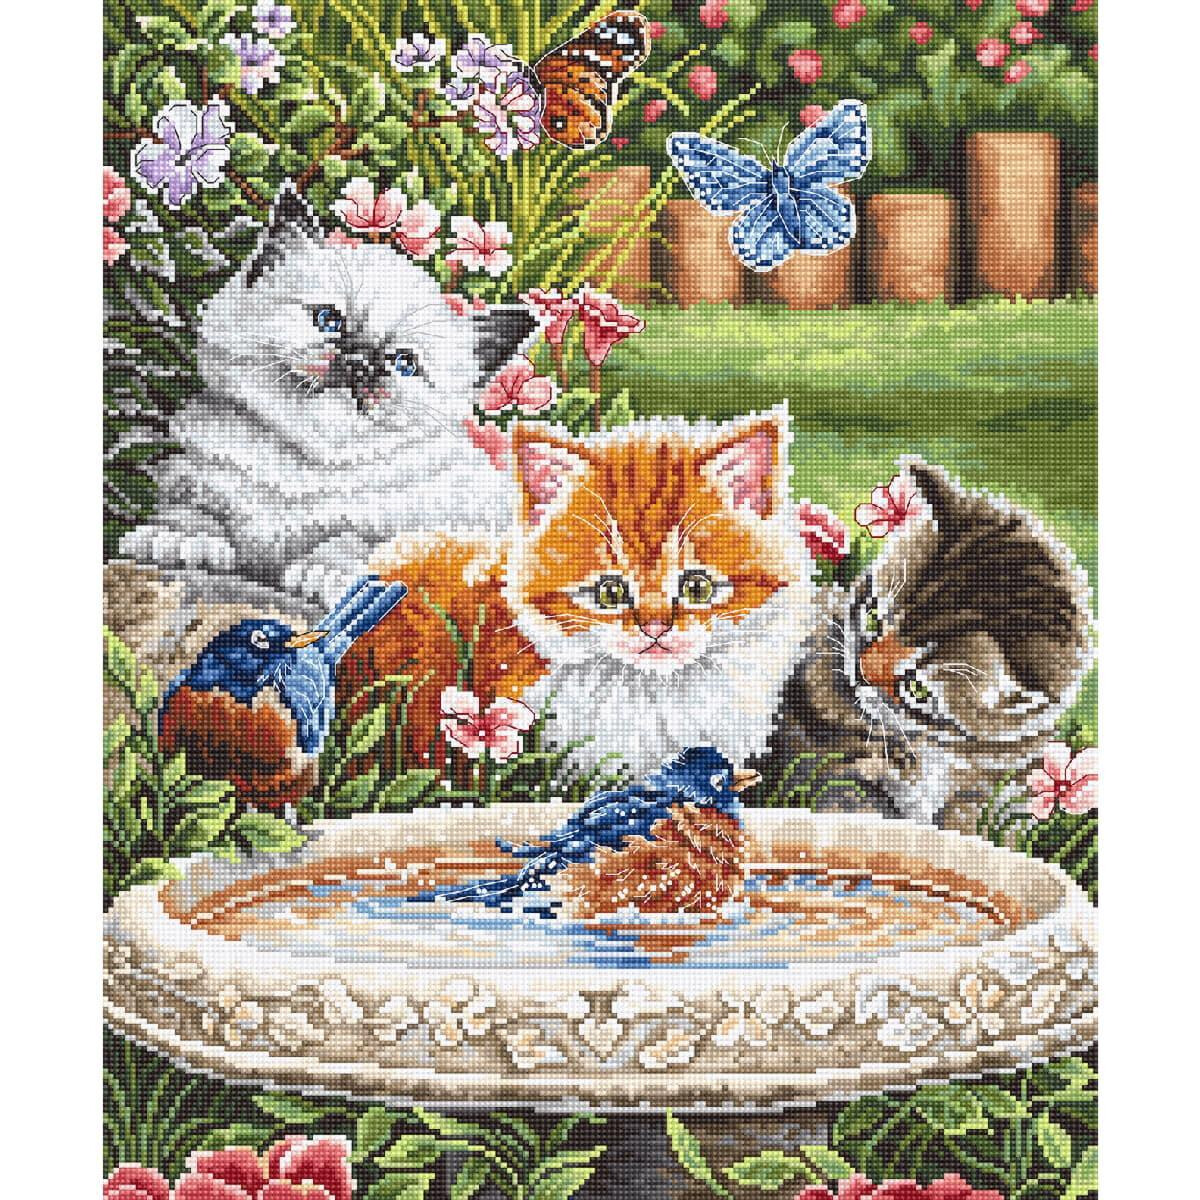 Unimmagine vivace di tre gattini in un giardino...